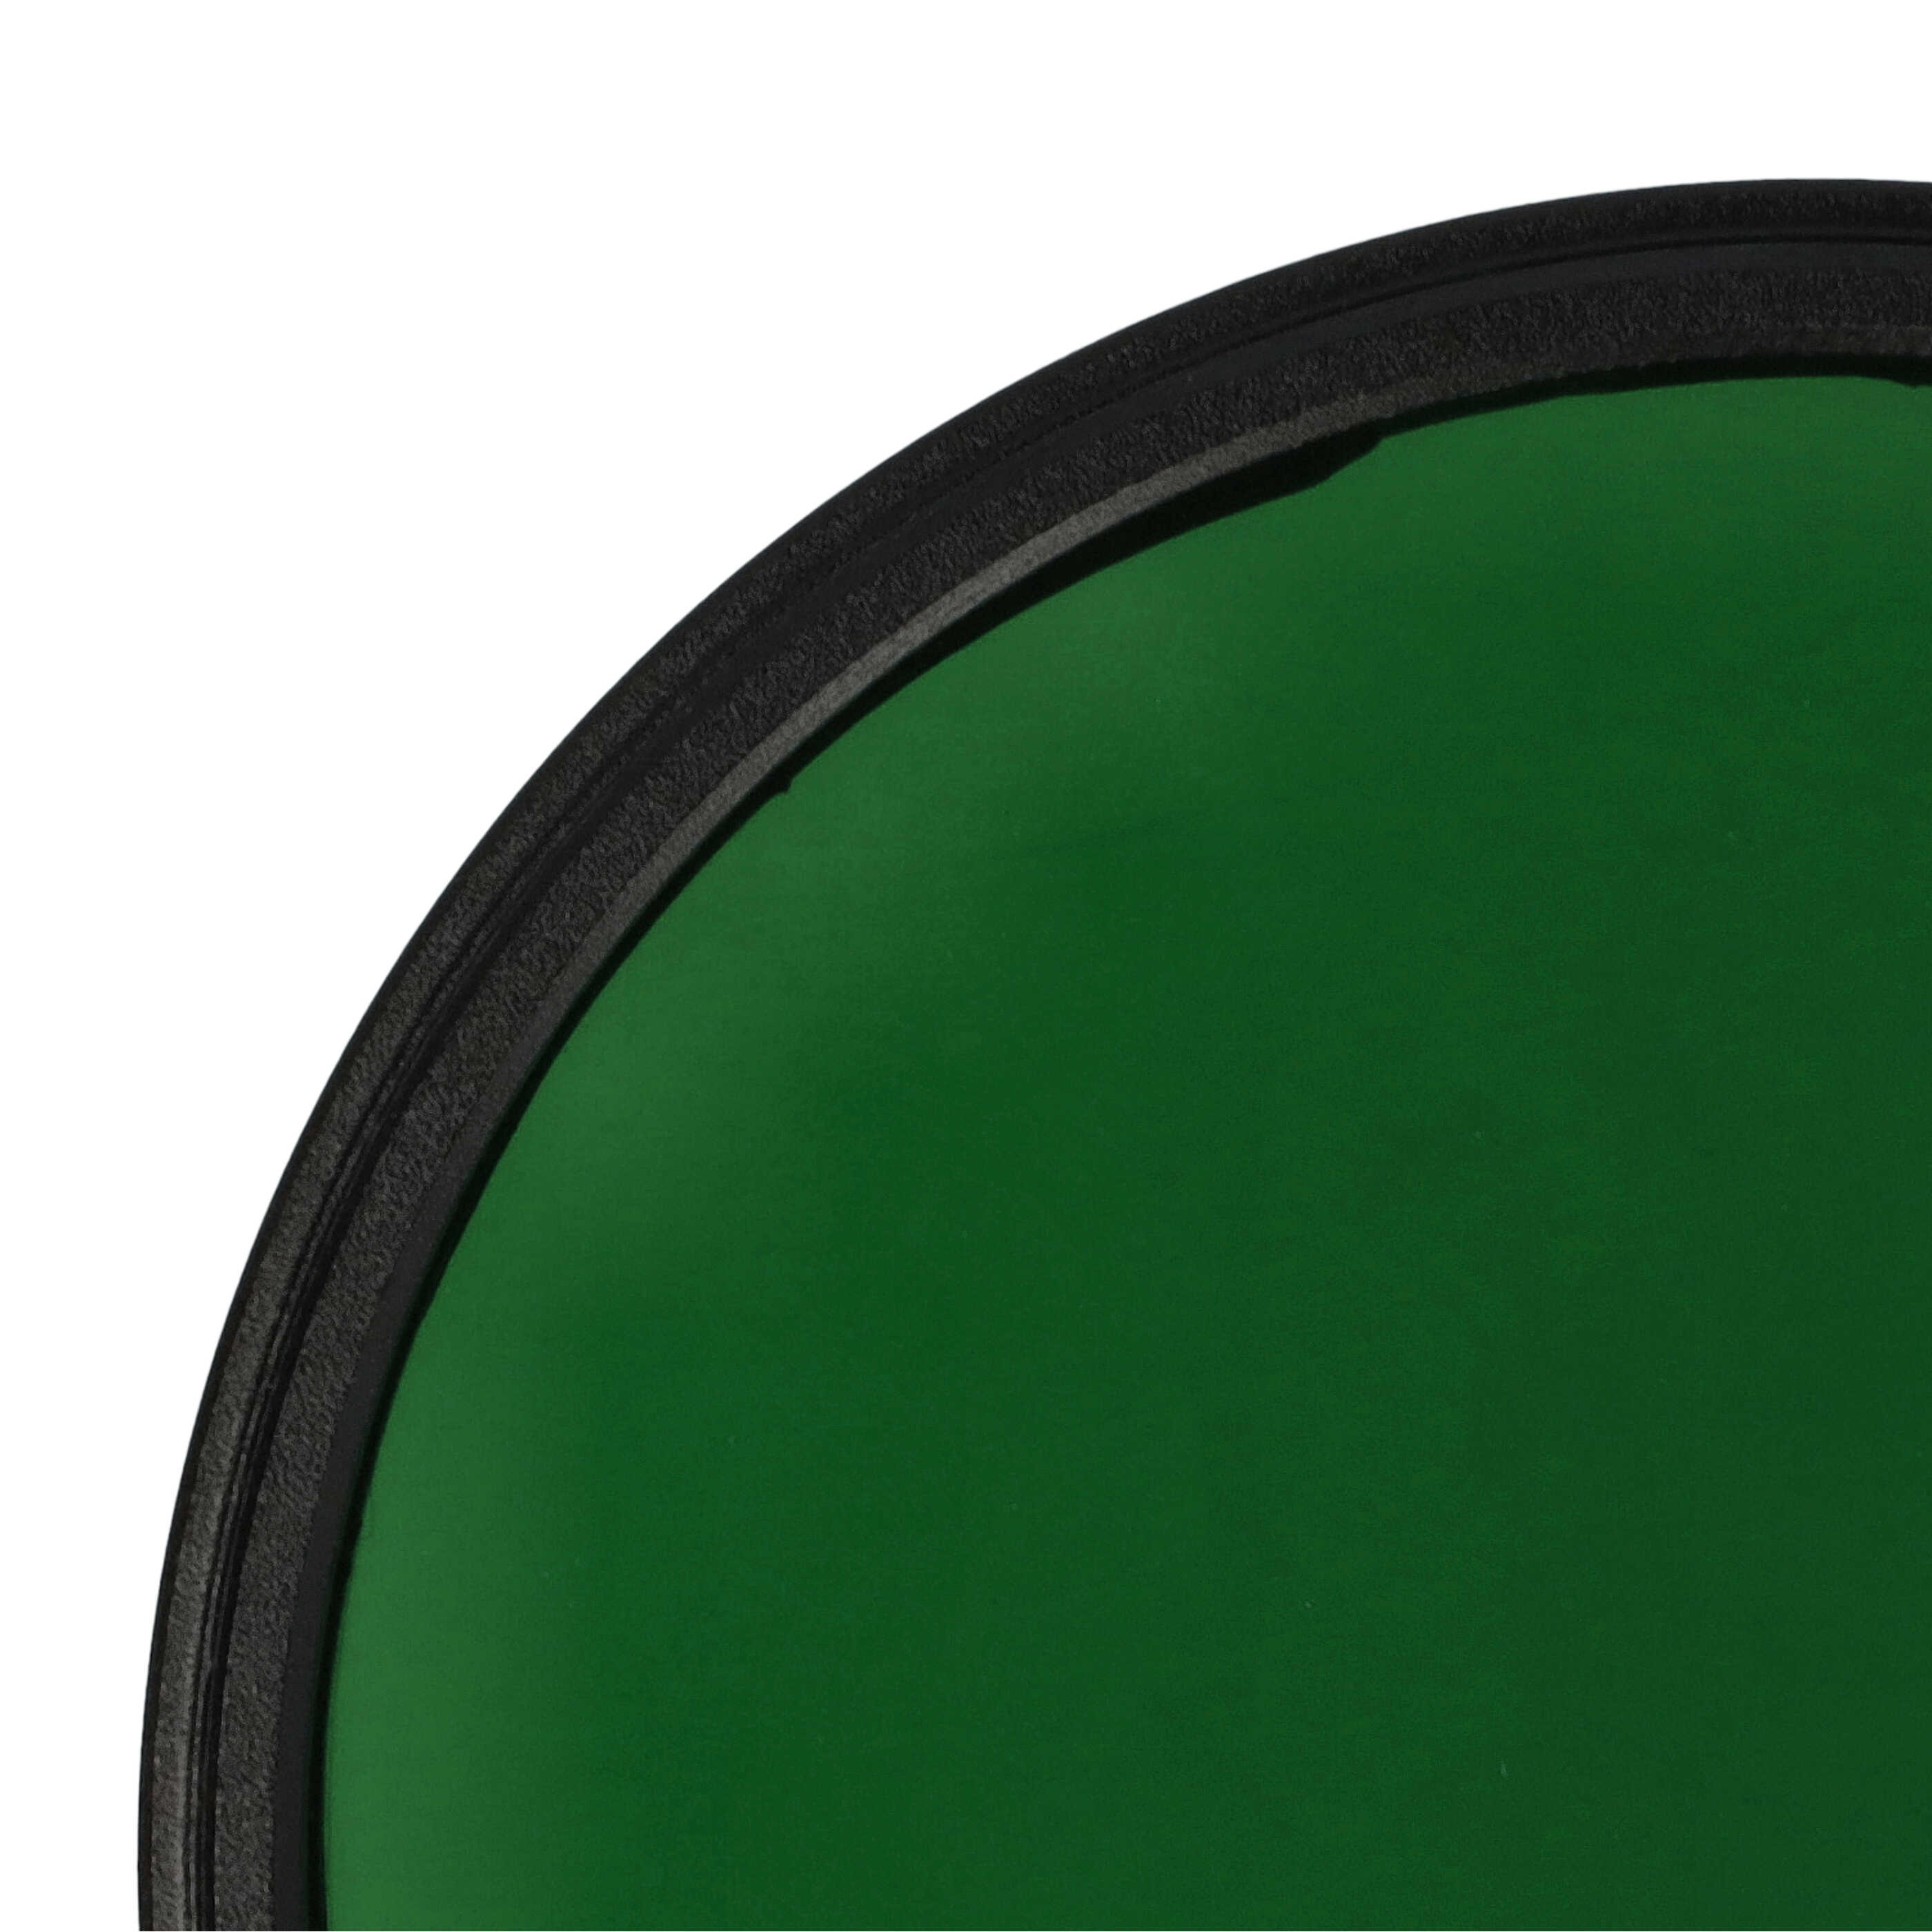 Filtre de couleur vert pour objectifs d'appareils photo de 67 mm - Filtre vert